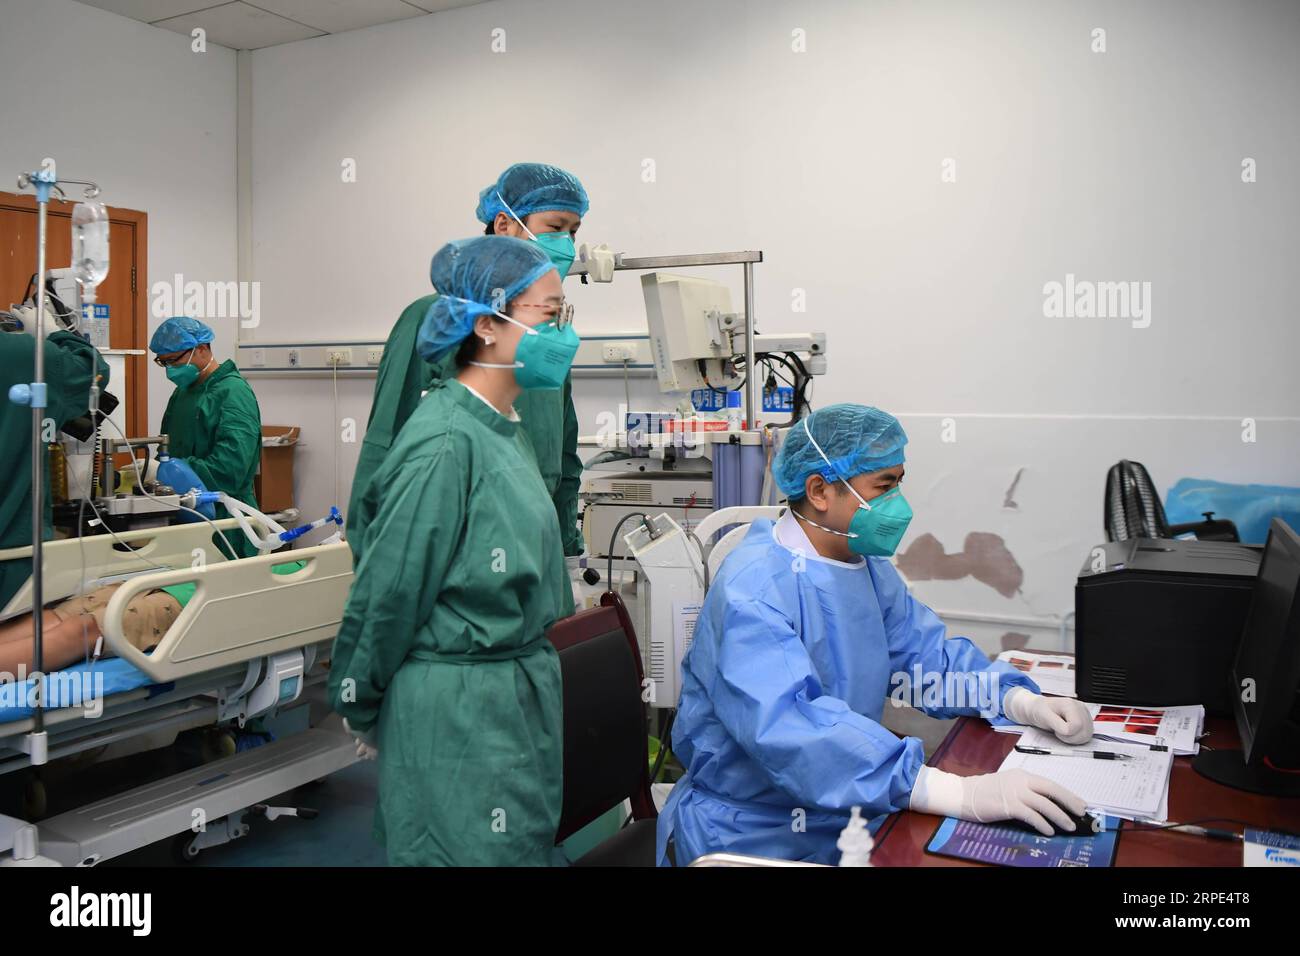 (190818) -- CHANGSHA, 18 août 2019 -- le docteur Xiao Yangbao (1e R) vérifie l'état d'un patient avant un examen endoscopique au centre d'endoscopie de l'hôpital thoracique du Hunan à Changsha, capitale de la province du Hunan en Chine centrale, 14 août 2019. Xiao Yangbao, un médecin de 39 ans du centre d’endoscopie de l’hôpital thoracique du Hunan, travaille sur la prévention et le traitement de la tuberculose depuis près de 8 ans. En tant que médecin effectuant des opérations d'endoscopie, Xiao est confronté à des risques d'exposition plus élevés à la tuberculose et à des exigences opératoires plus élevées en termes de précision et de concentration. Xiao se sent toujours gratifi Banque D'Images